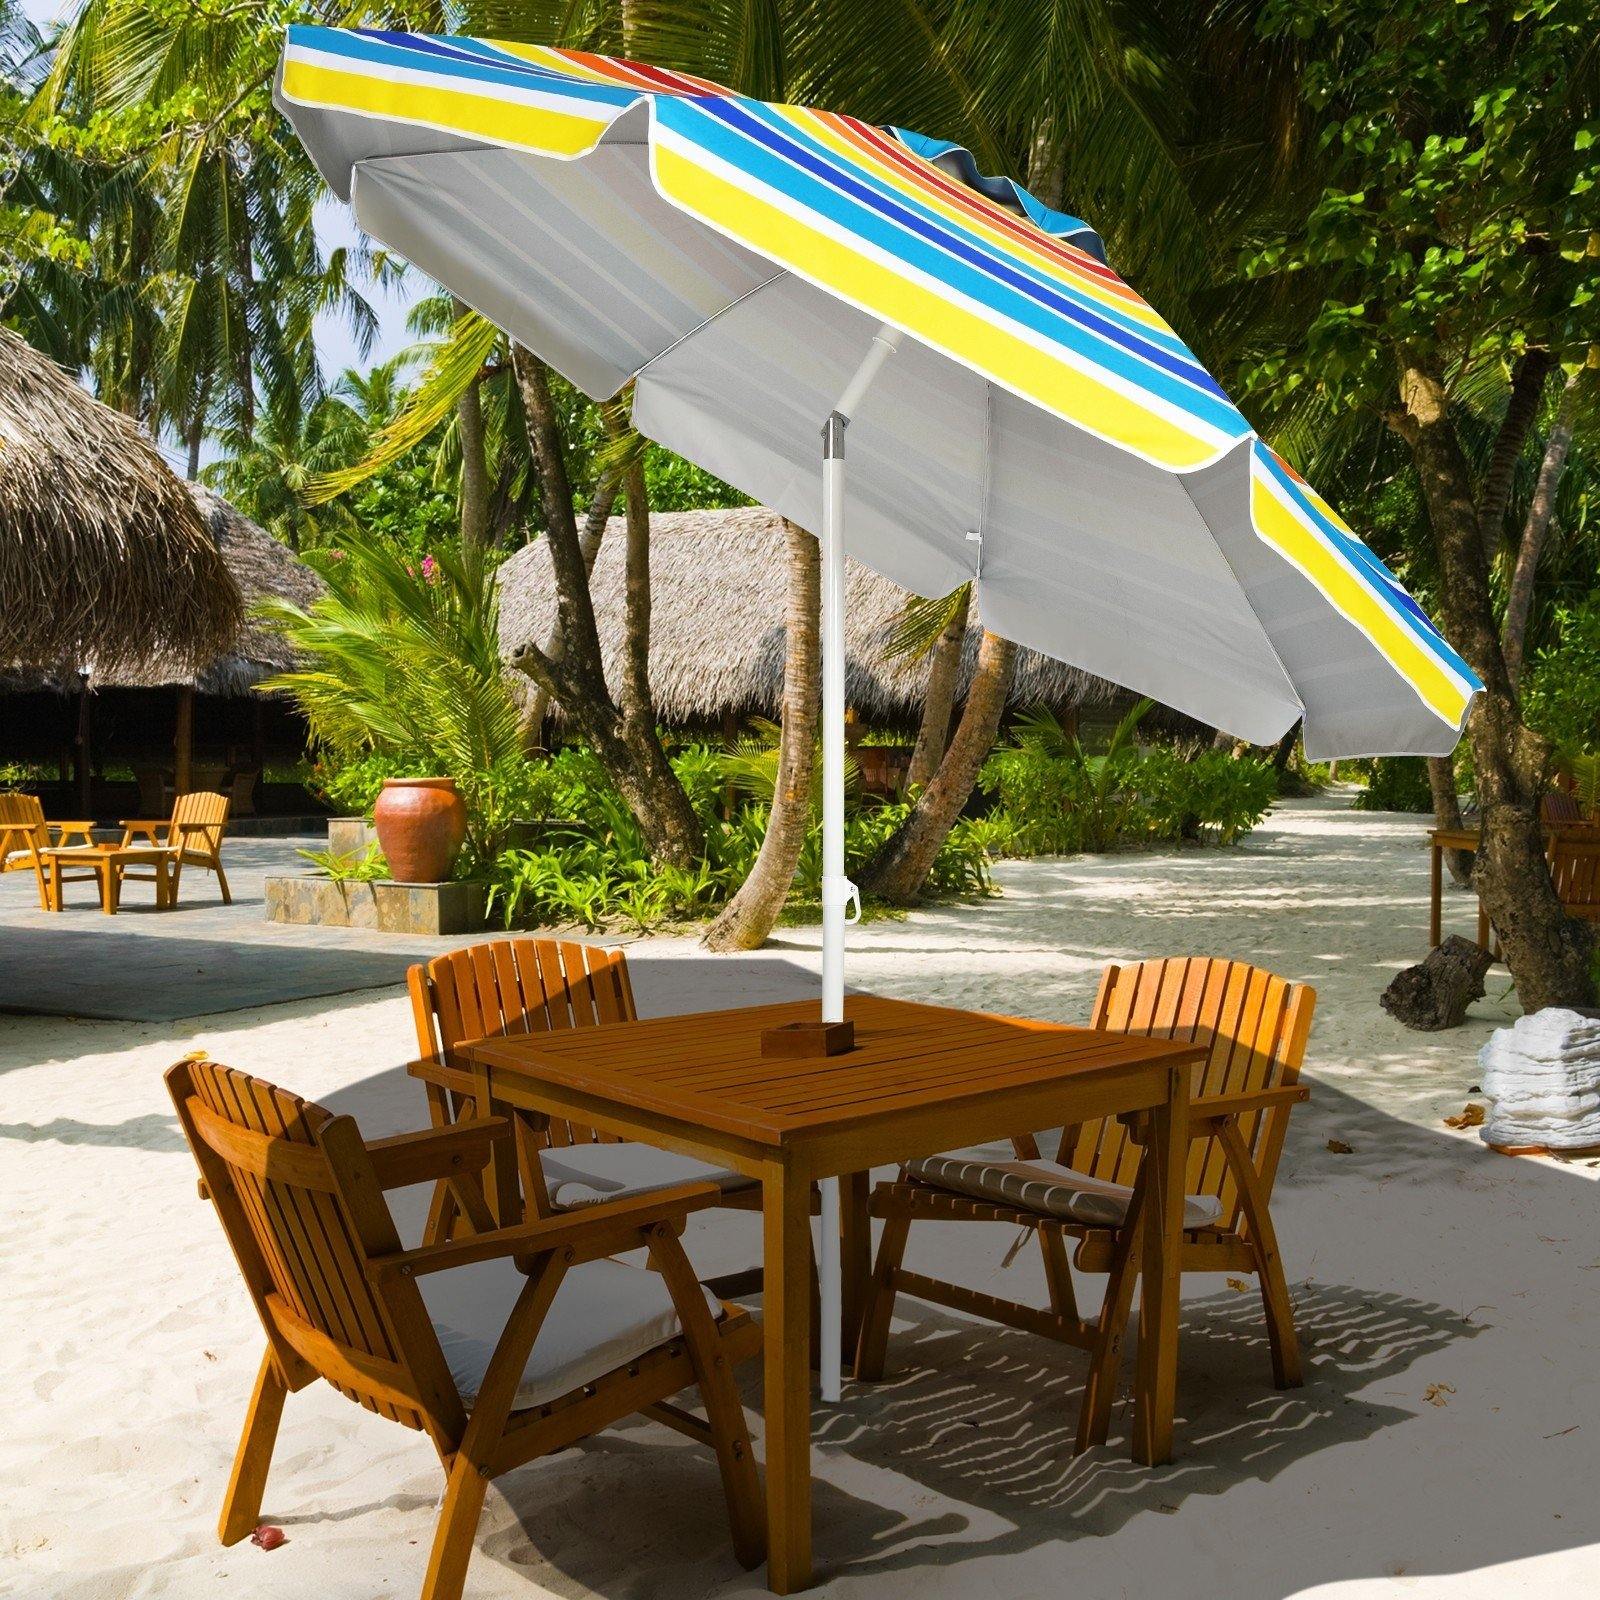 Giantex 7.2 Ft Beach Umbrella, Patio Sunshade Umbrella with Sand Anchor & Cupholder - Giantexus